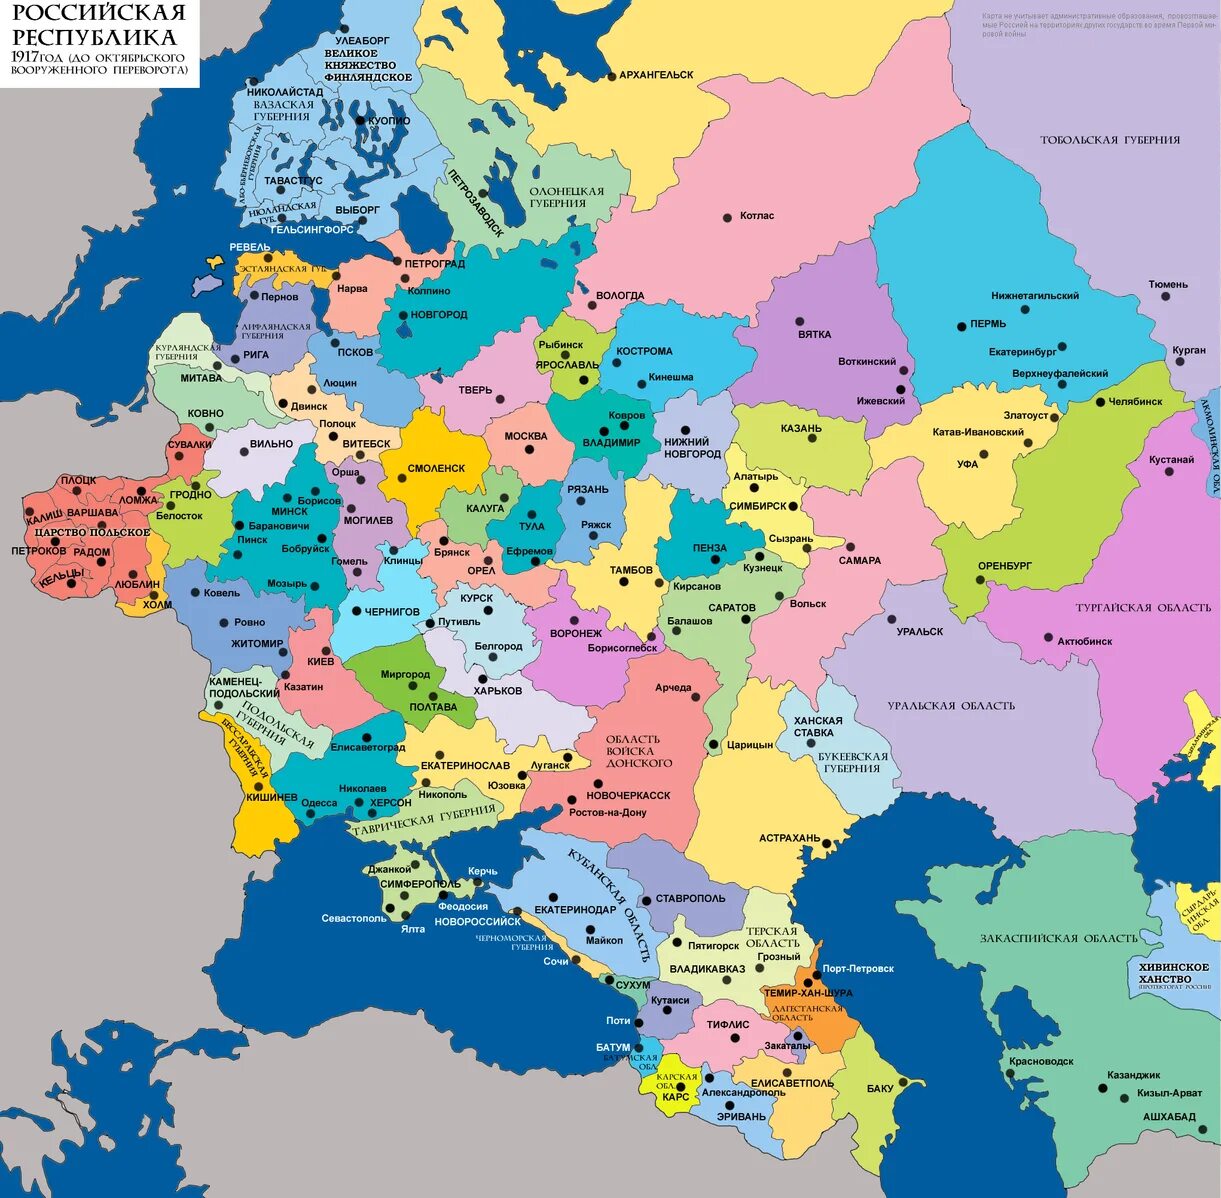 Карта Российской империи до 1917 европейская часть. Карта России 1914 года с губерниями европейская часть. Карта Российской империи 1914 года с губерниями европейская часть. Карта Российской империи до 1917 года с губерниями.